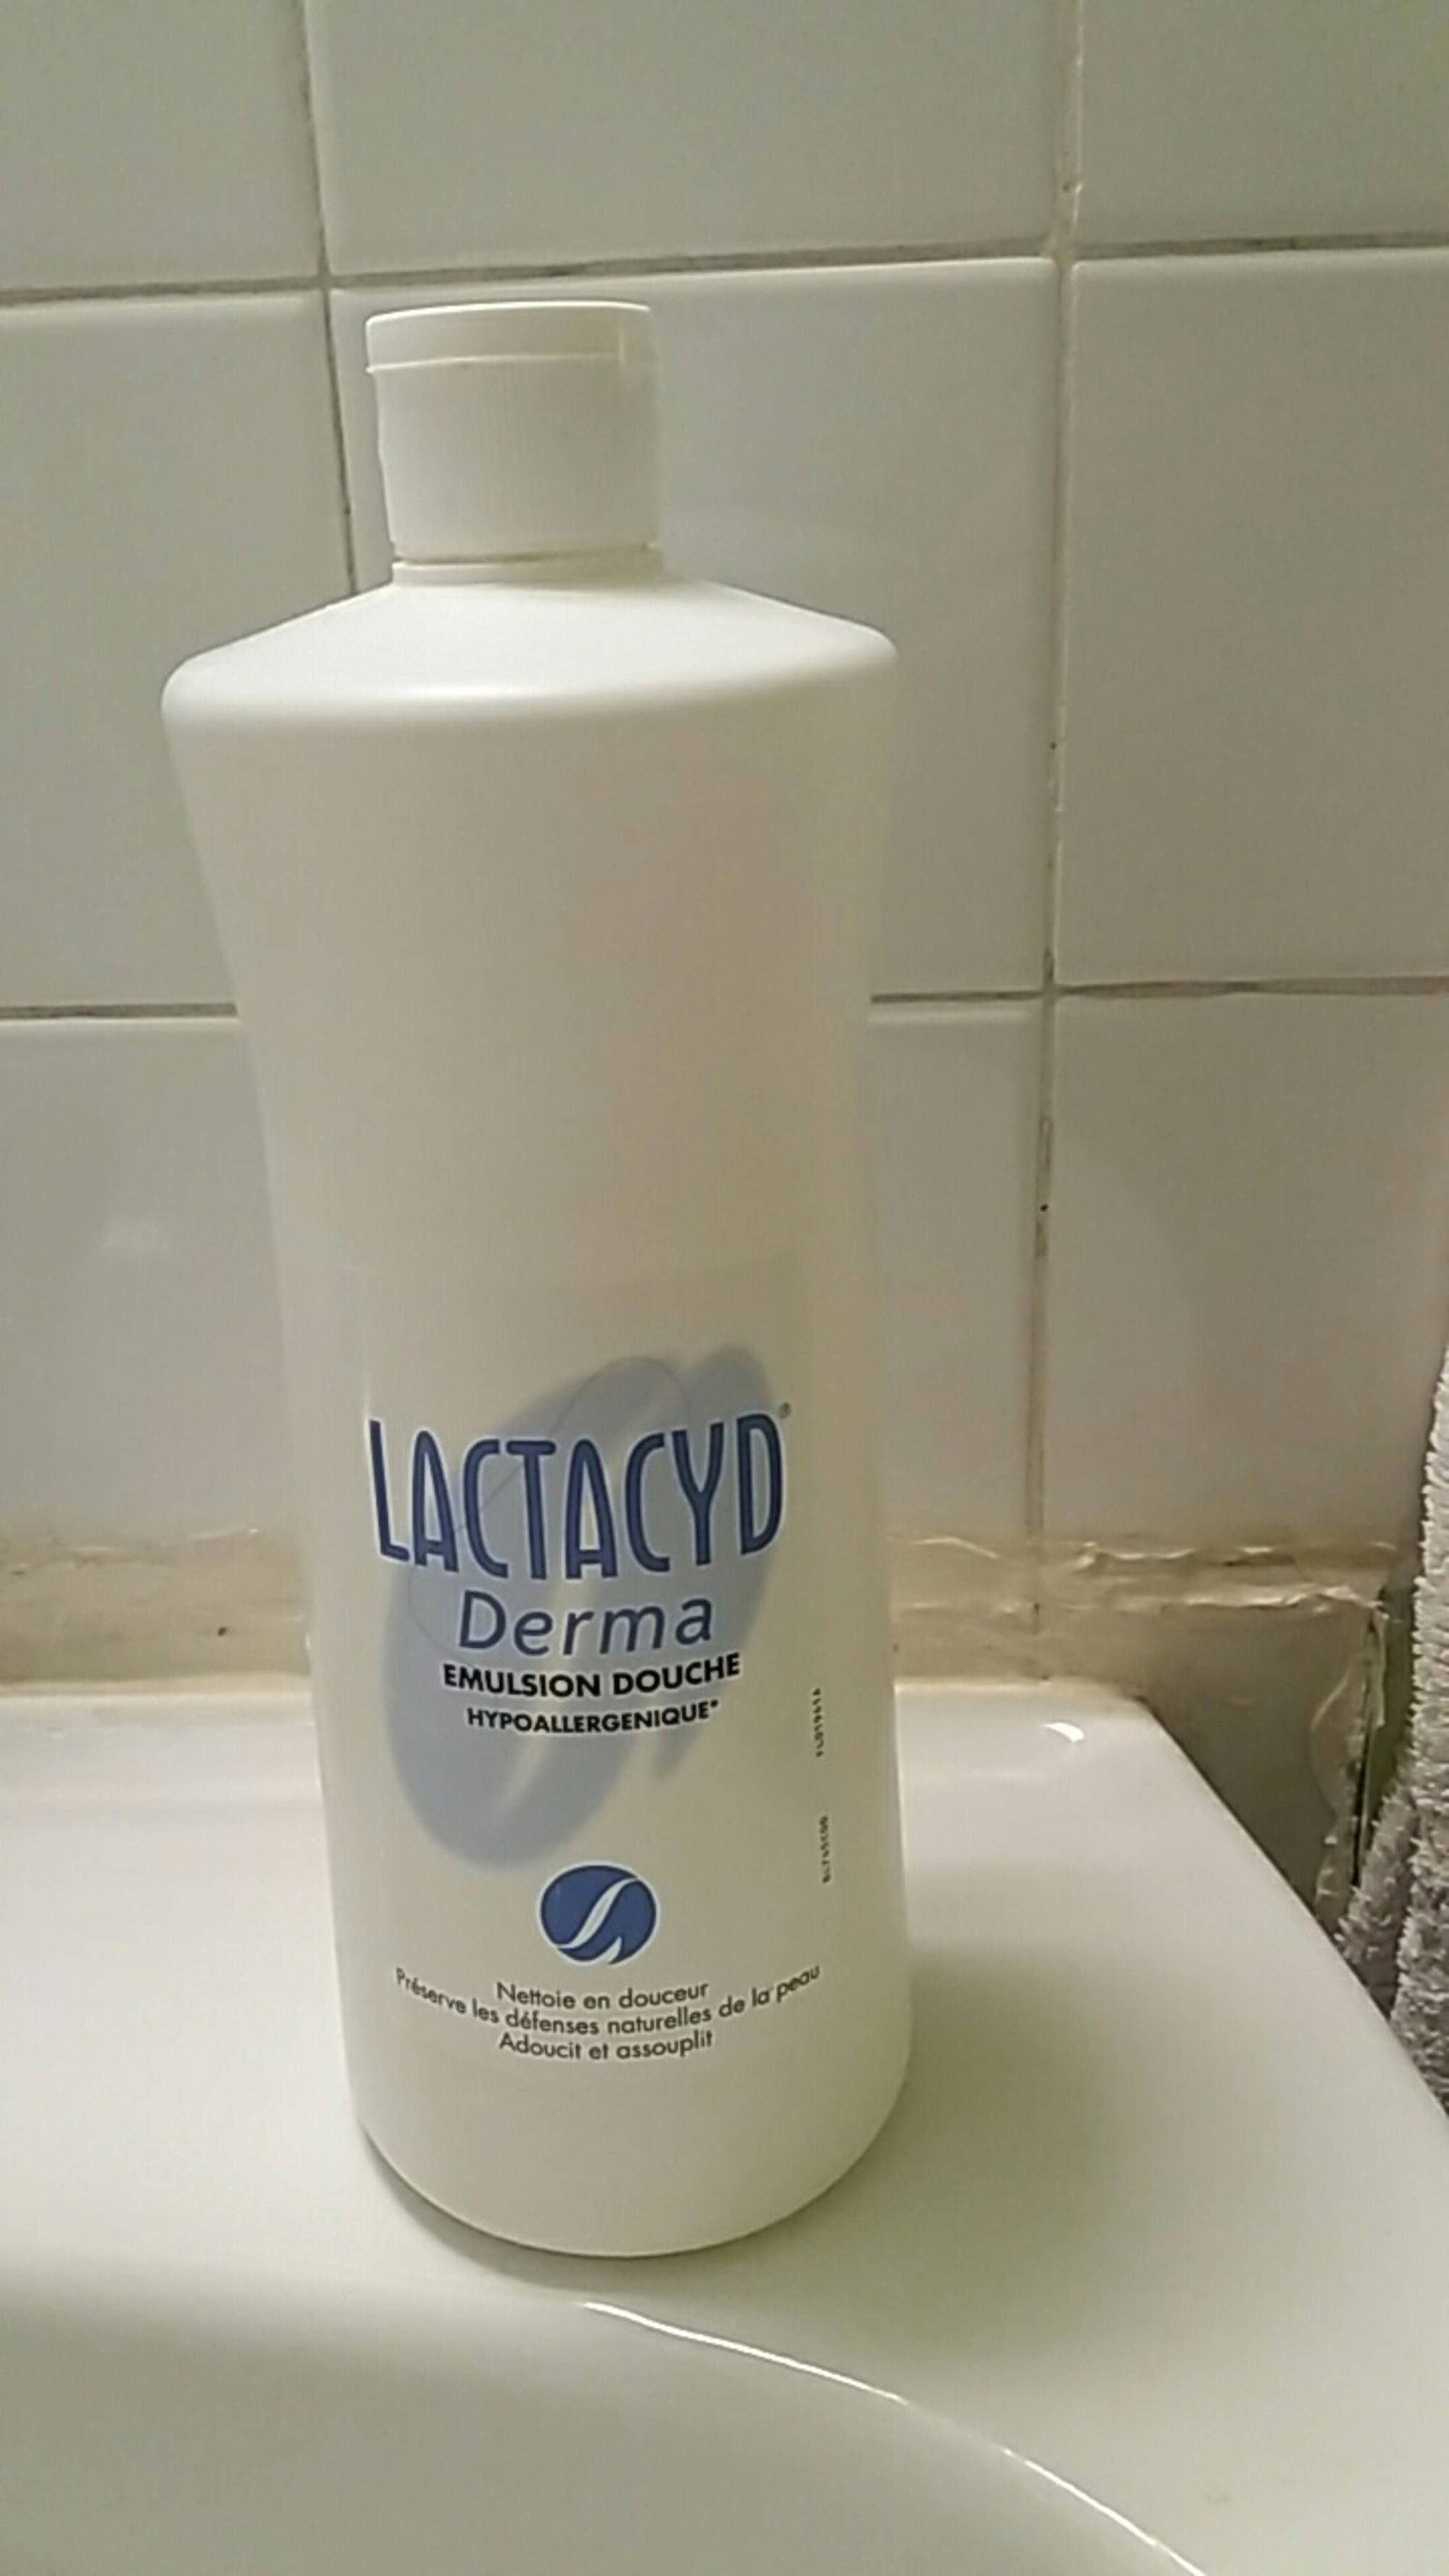 LACTACYD - Derma - Emulsion douche